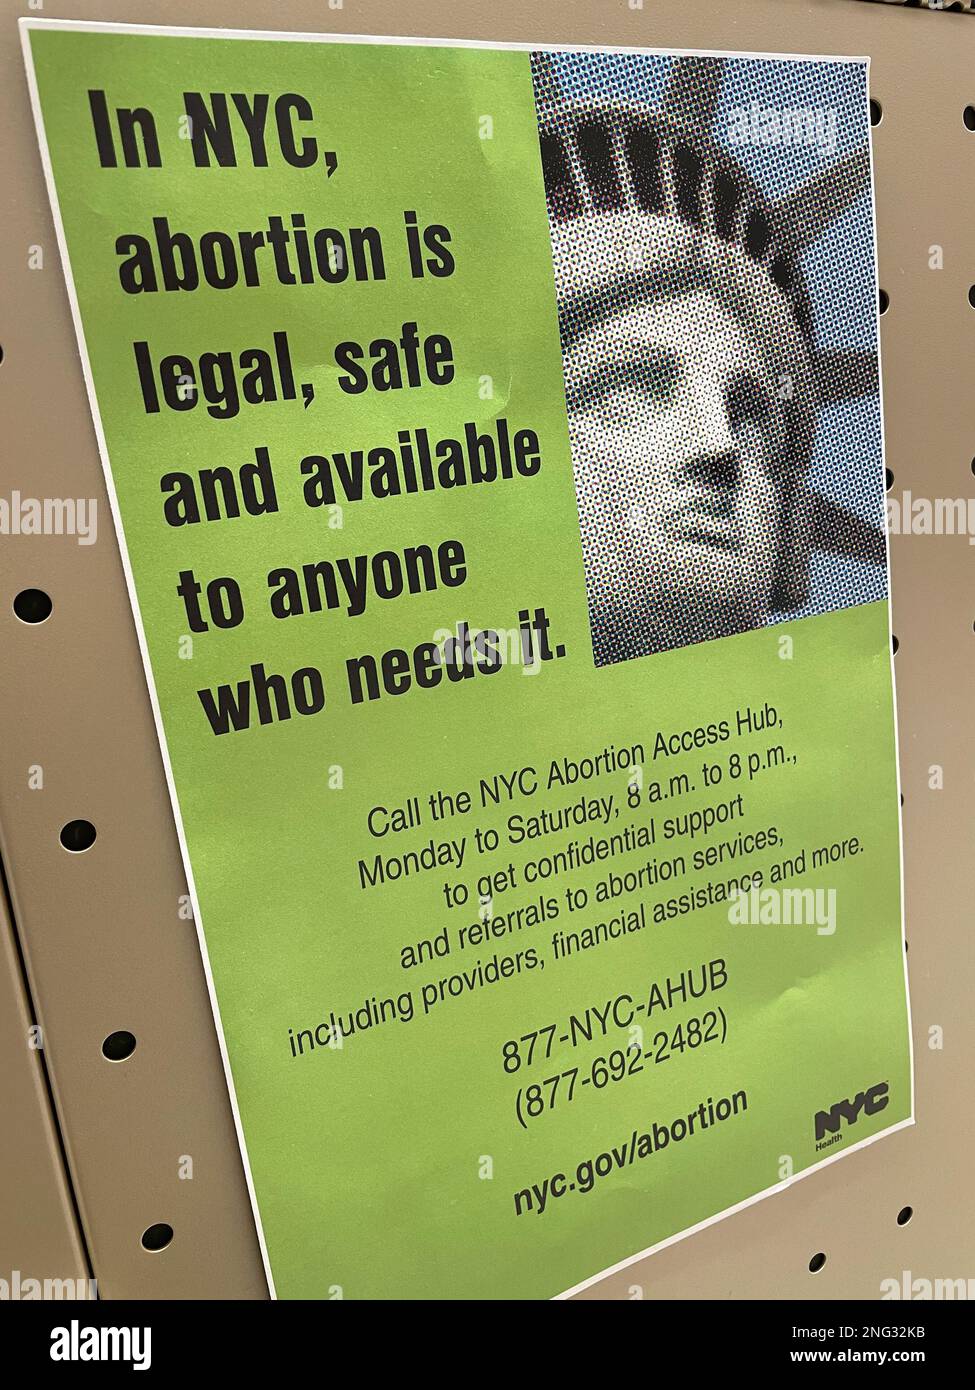 Gros plan d'une affiche qui annonce que dans la ville de New York l'avortement est légal, sûr et disponible à tous ceux qui le veulent., 2023, Etats-Unis. Banque D'Images